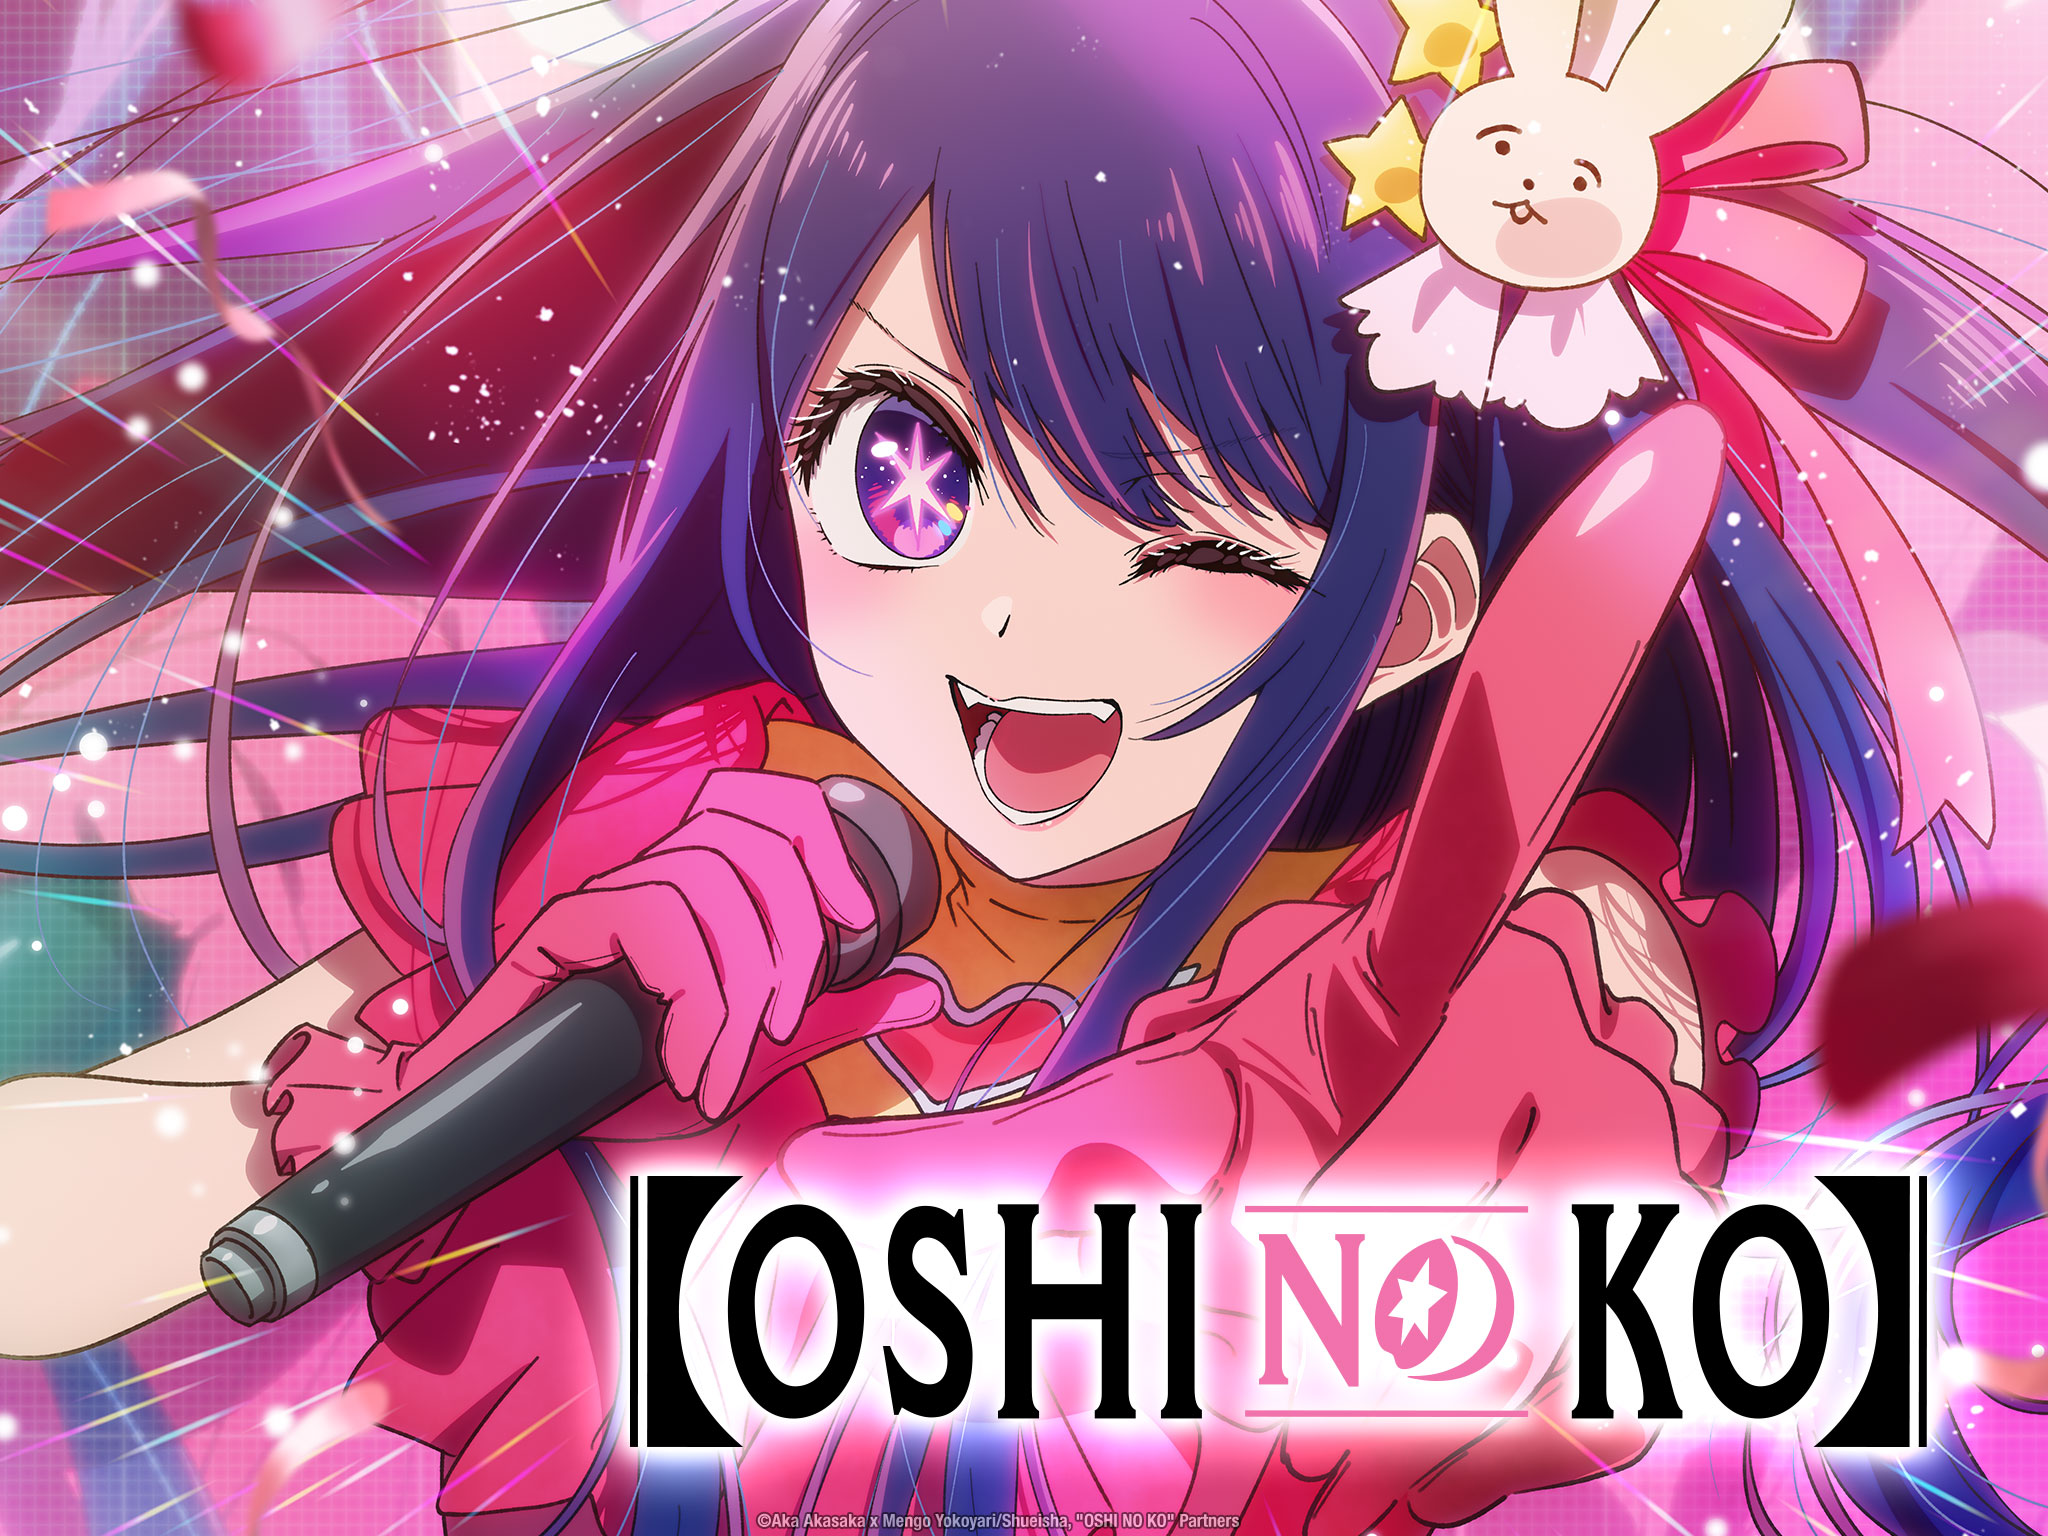 ¿Quién es el padre en "Oshi no Ko"?